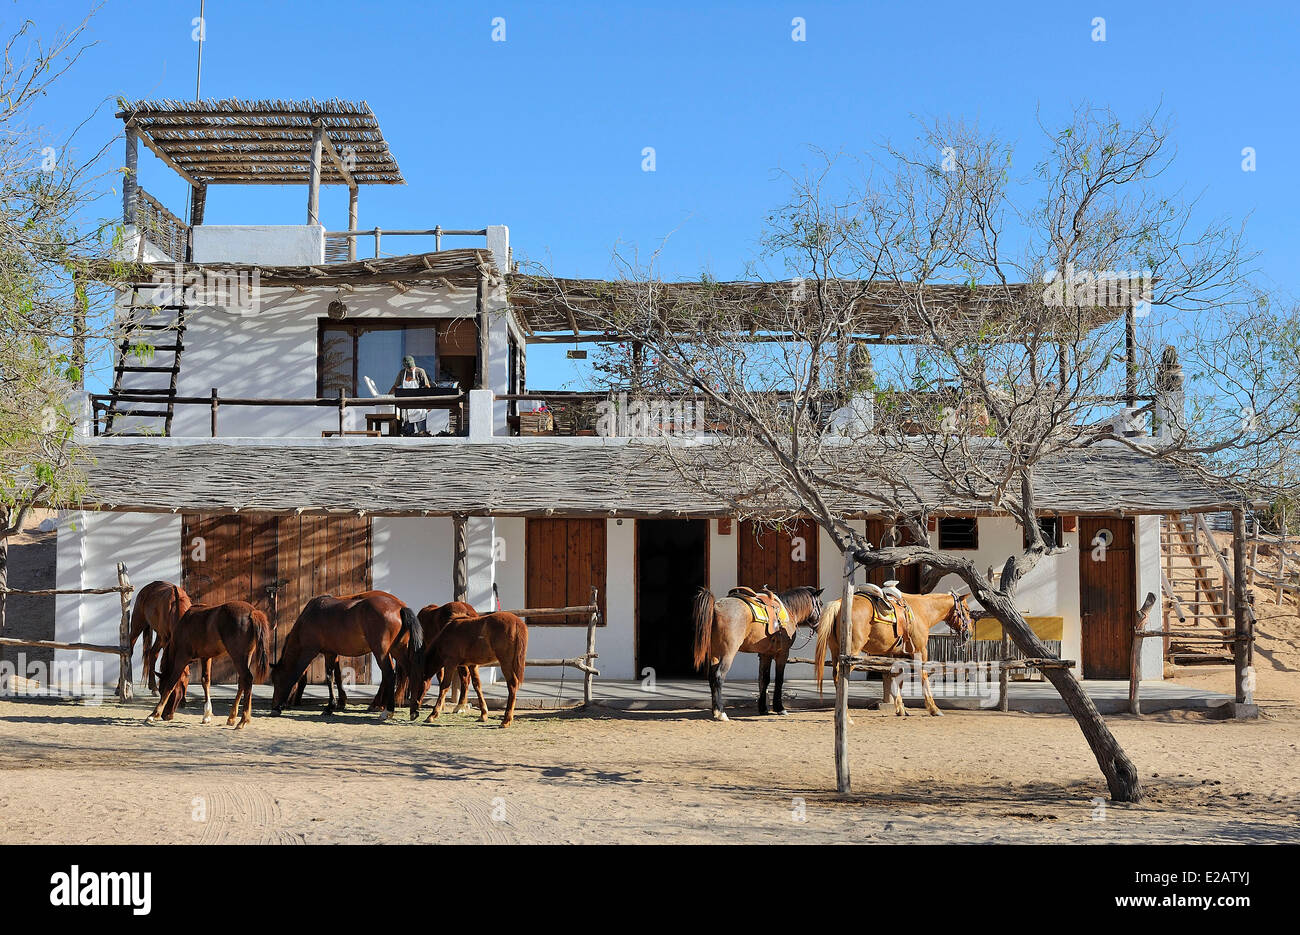 Mexico, Baja California Sur State, Playa Migrinos surroundings, Las Aventuras Ranch Stock Photo